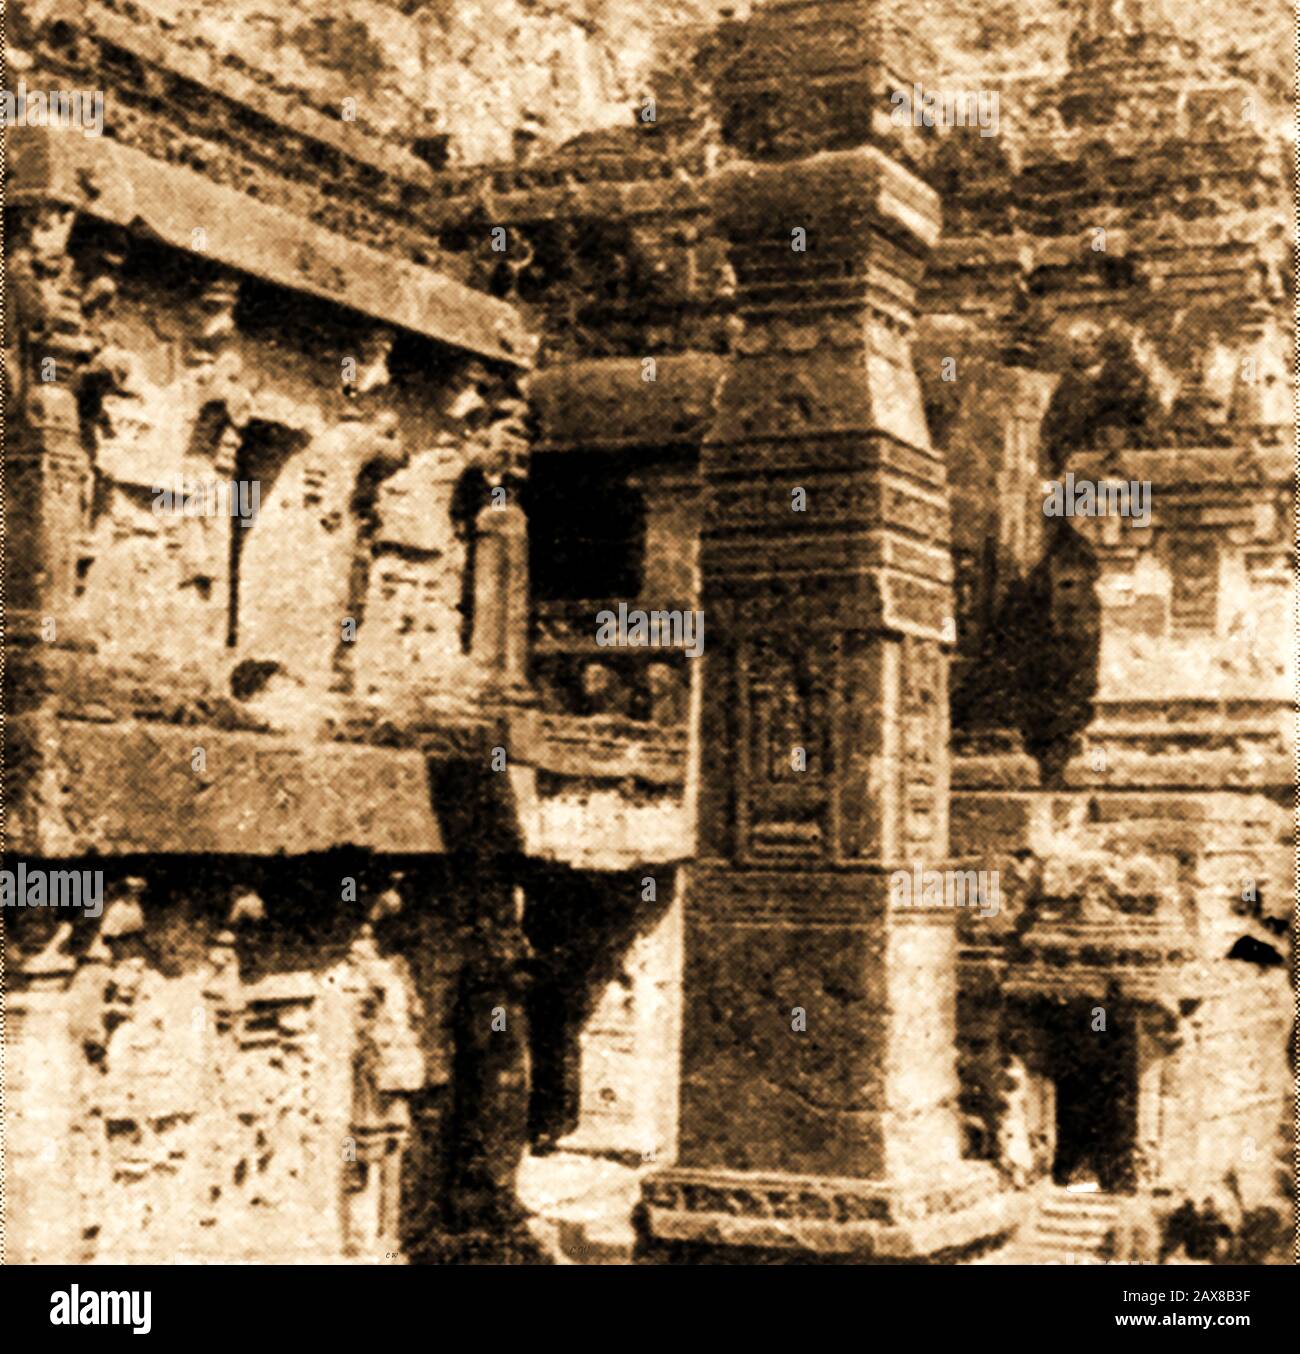 Tempio della grotta di Dravidian a Ellora, India meridionale nel 1920 - il tempio di Kailasha , Kailāśa, Kailashanatha, o Kailāśanātha, è il più grande dei templi indù scavati nella roccia alle Grotte di Ellora, Maharashtra, India. Foto Stock